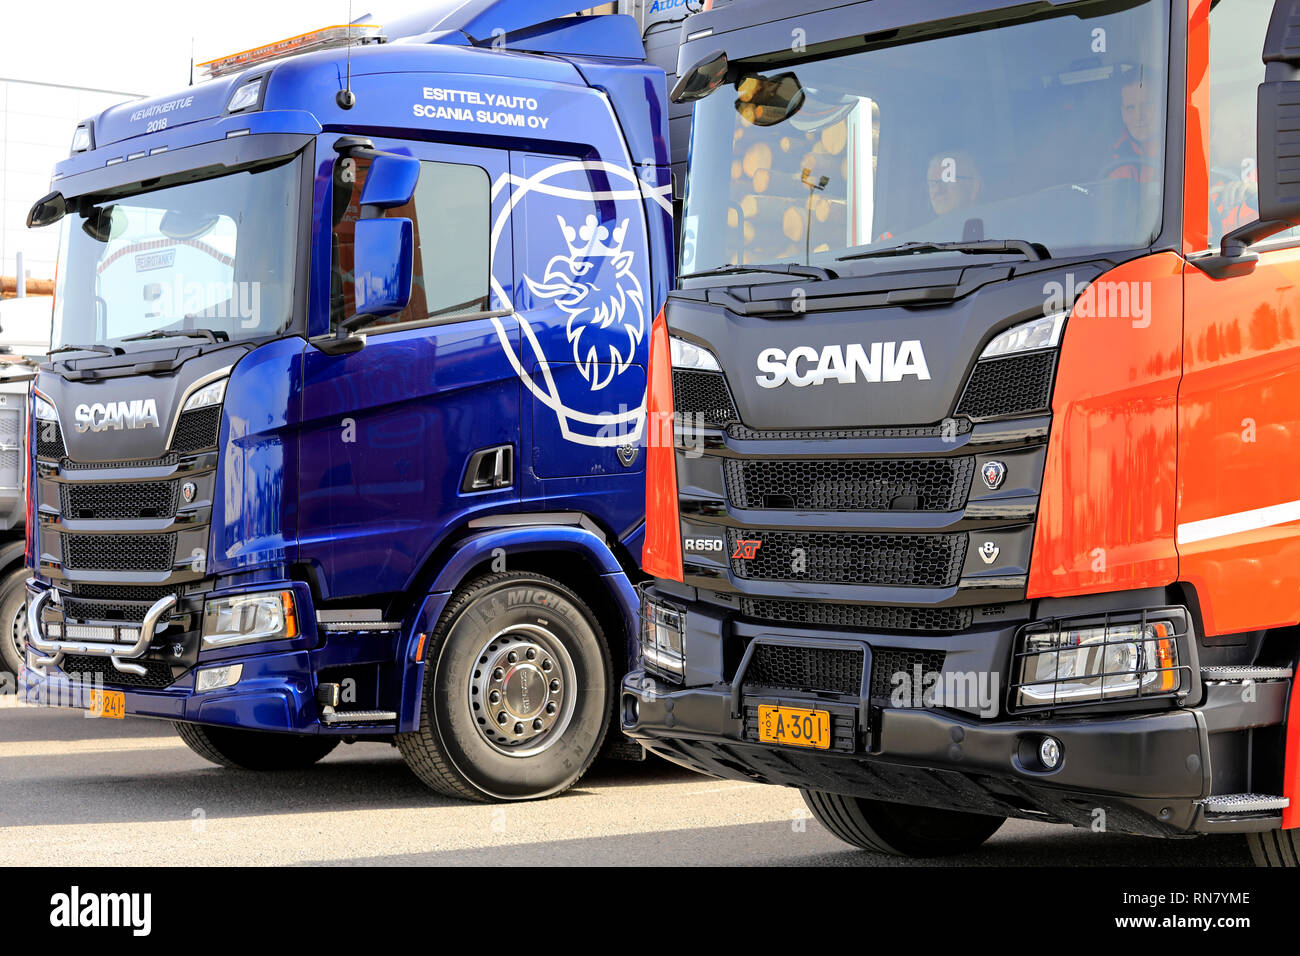 LIETO, Finlandia - 12 APR 2018: Nuovo Scania camion, R730 e orange R650 XT sul Scania Tour 2018. Il Feb 18, 2019, Scania celebra 70 anni in Finlandia. Foto Stock